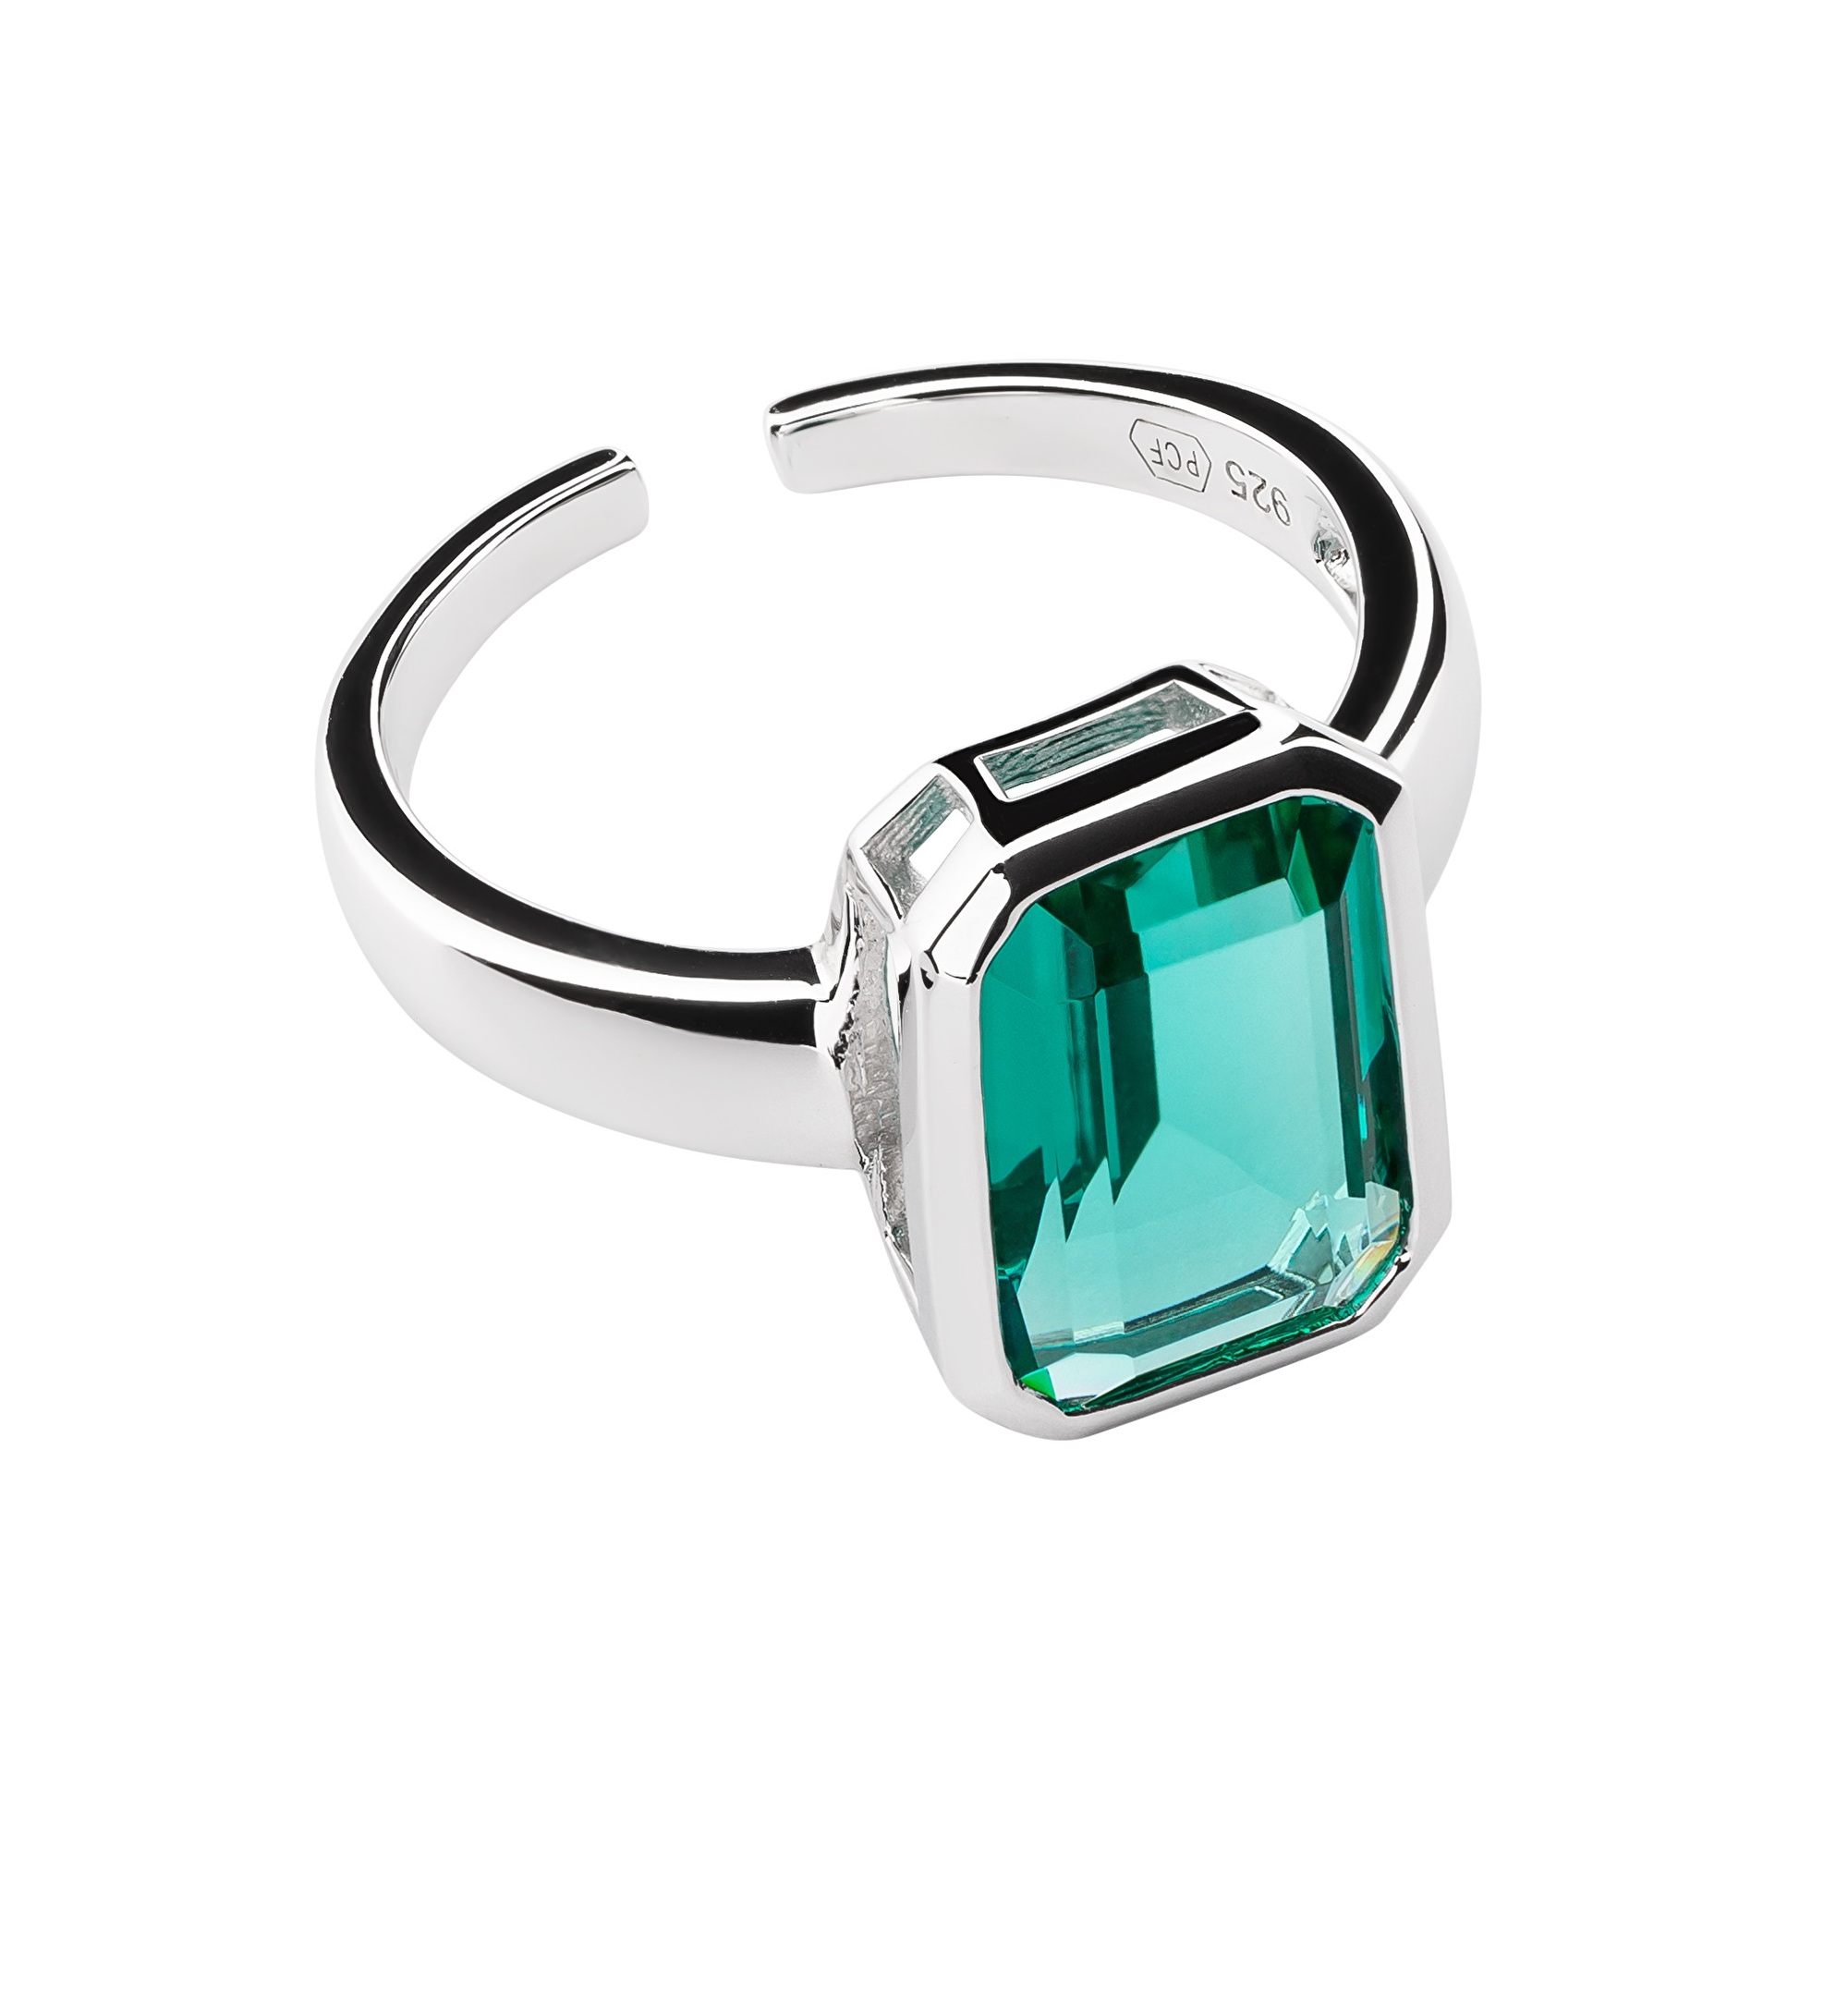 Preciosa Nádherný otvorený prsteň so zeleným zirkónom Preciosa Atlantis 5355 94 L (56 - 59 mm)